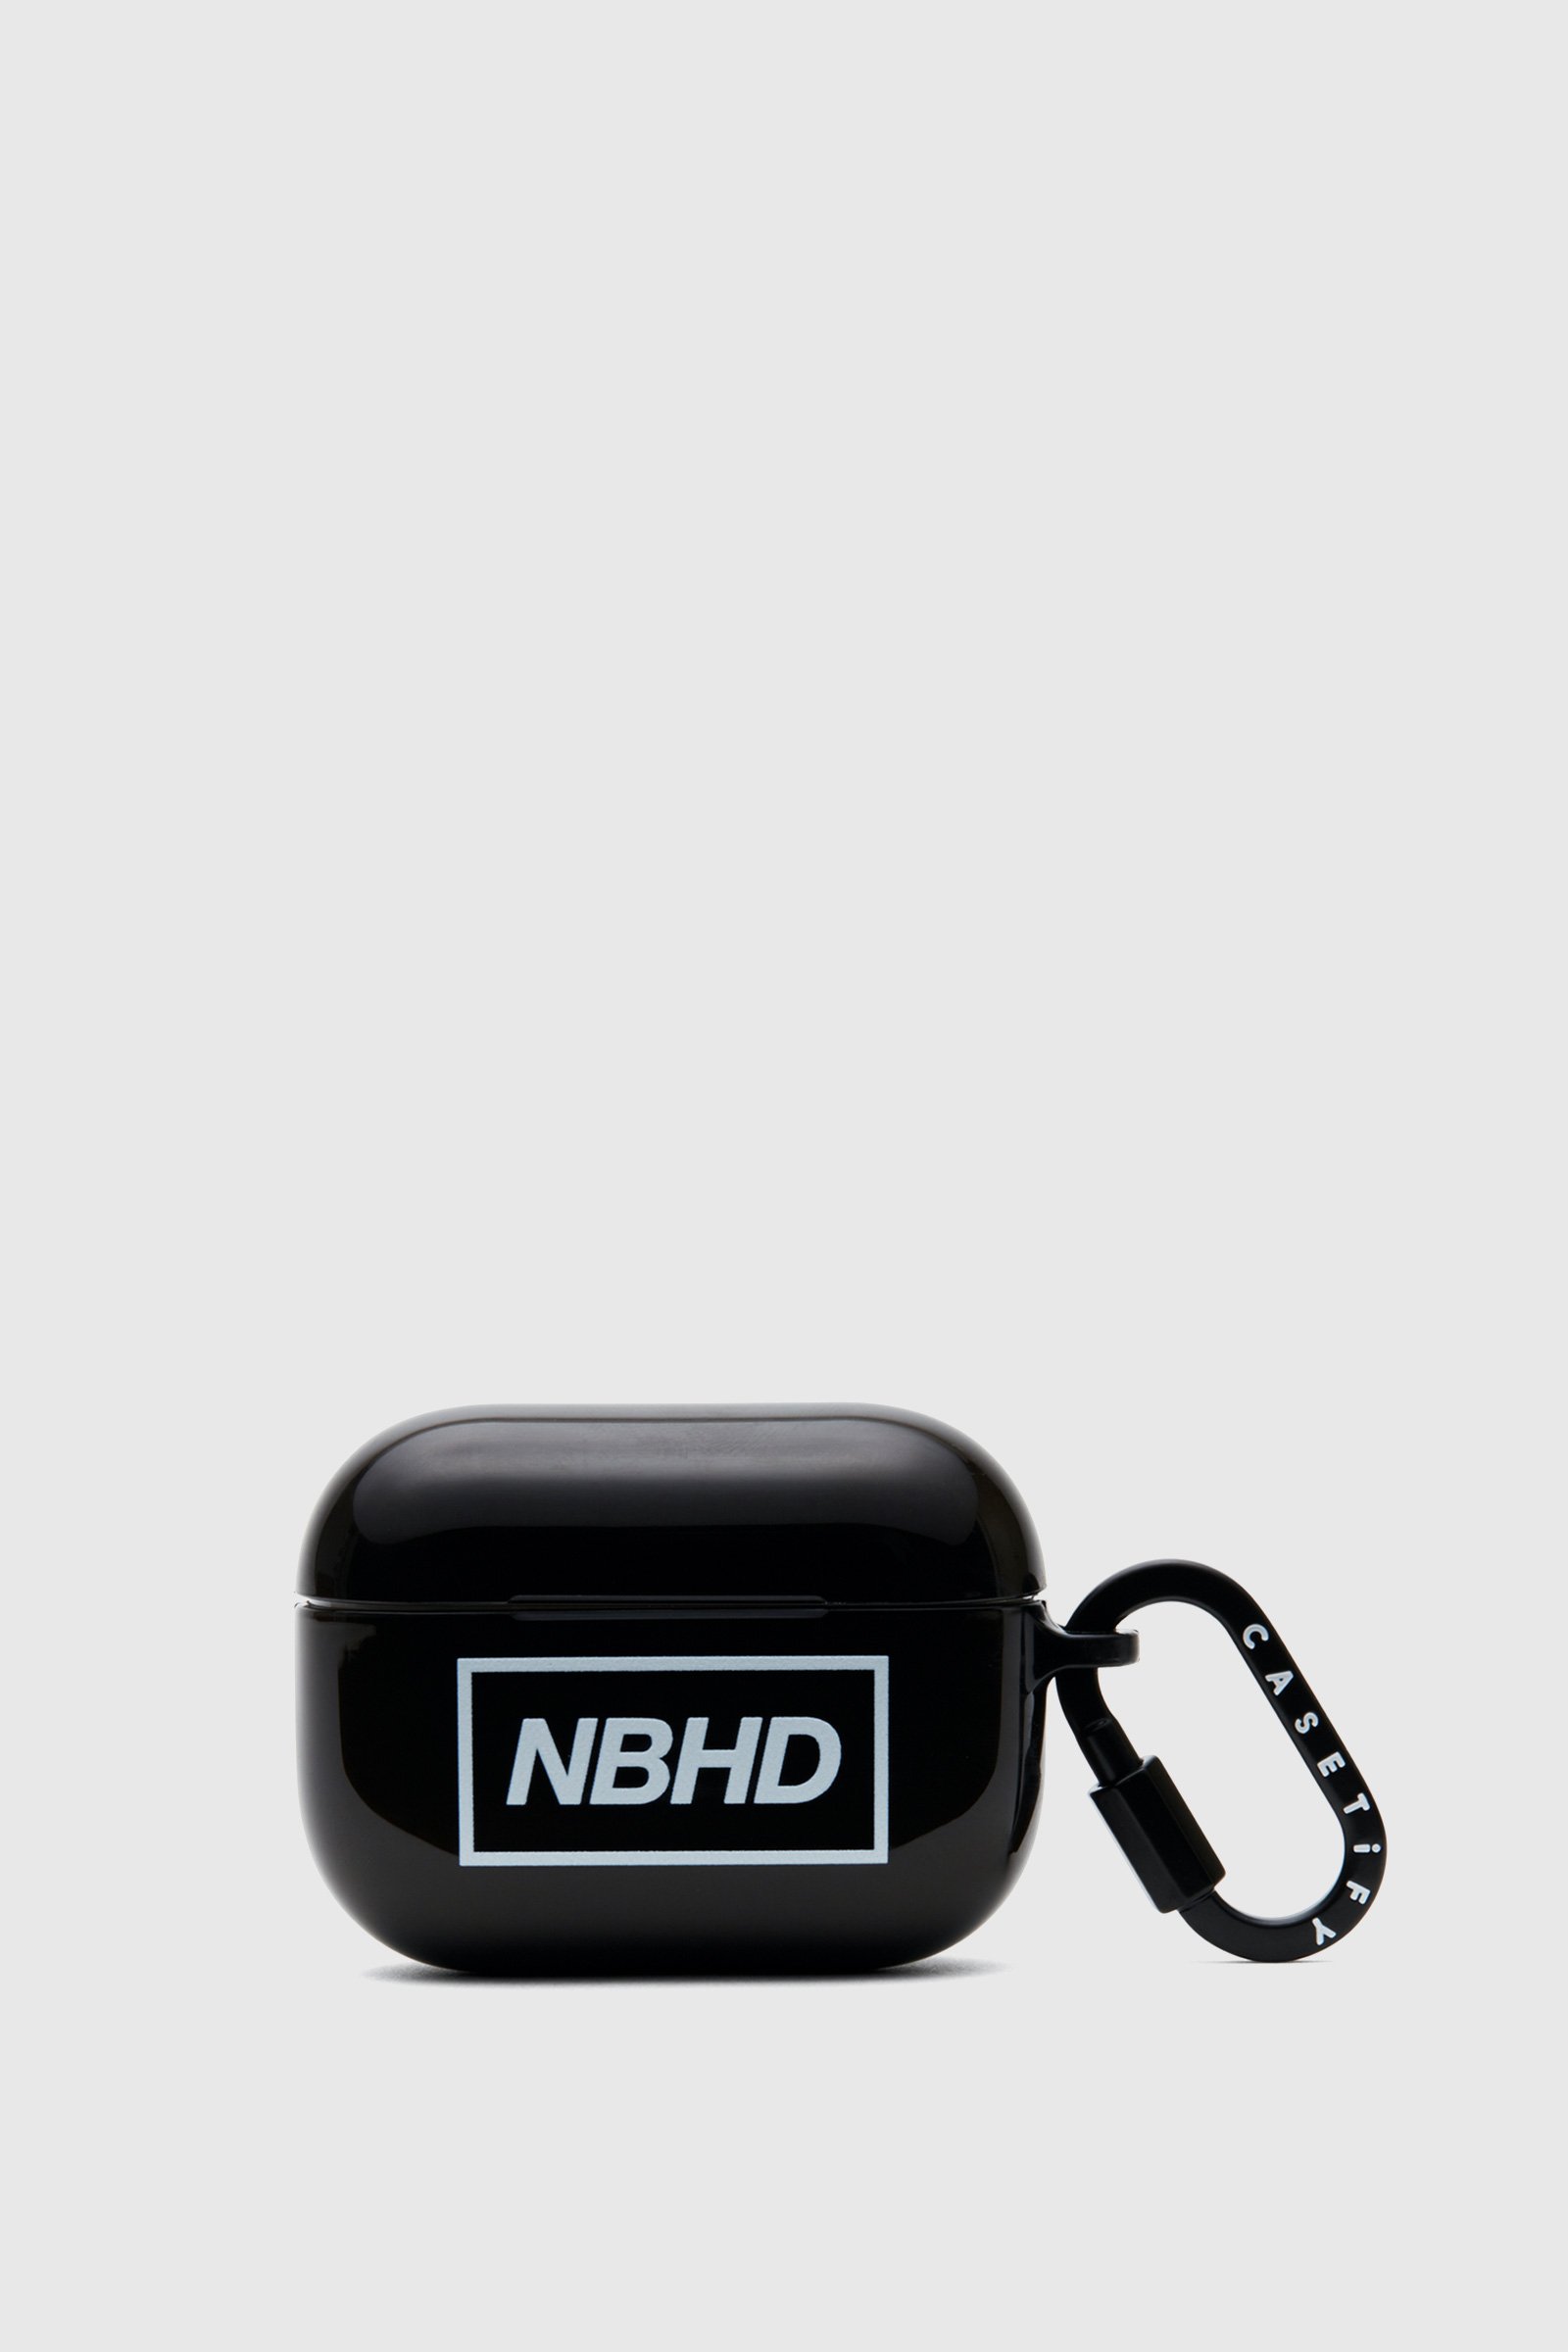 今年も話題の Case Pro AirPods ネイバーフッド NBHD - モバイルケース ...